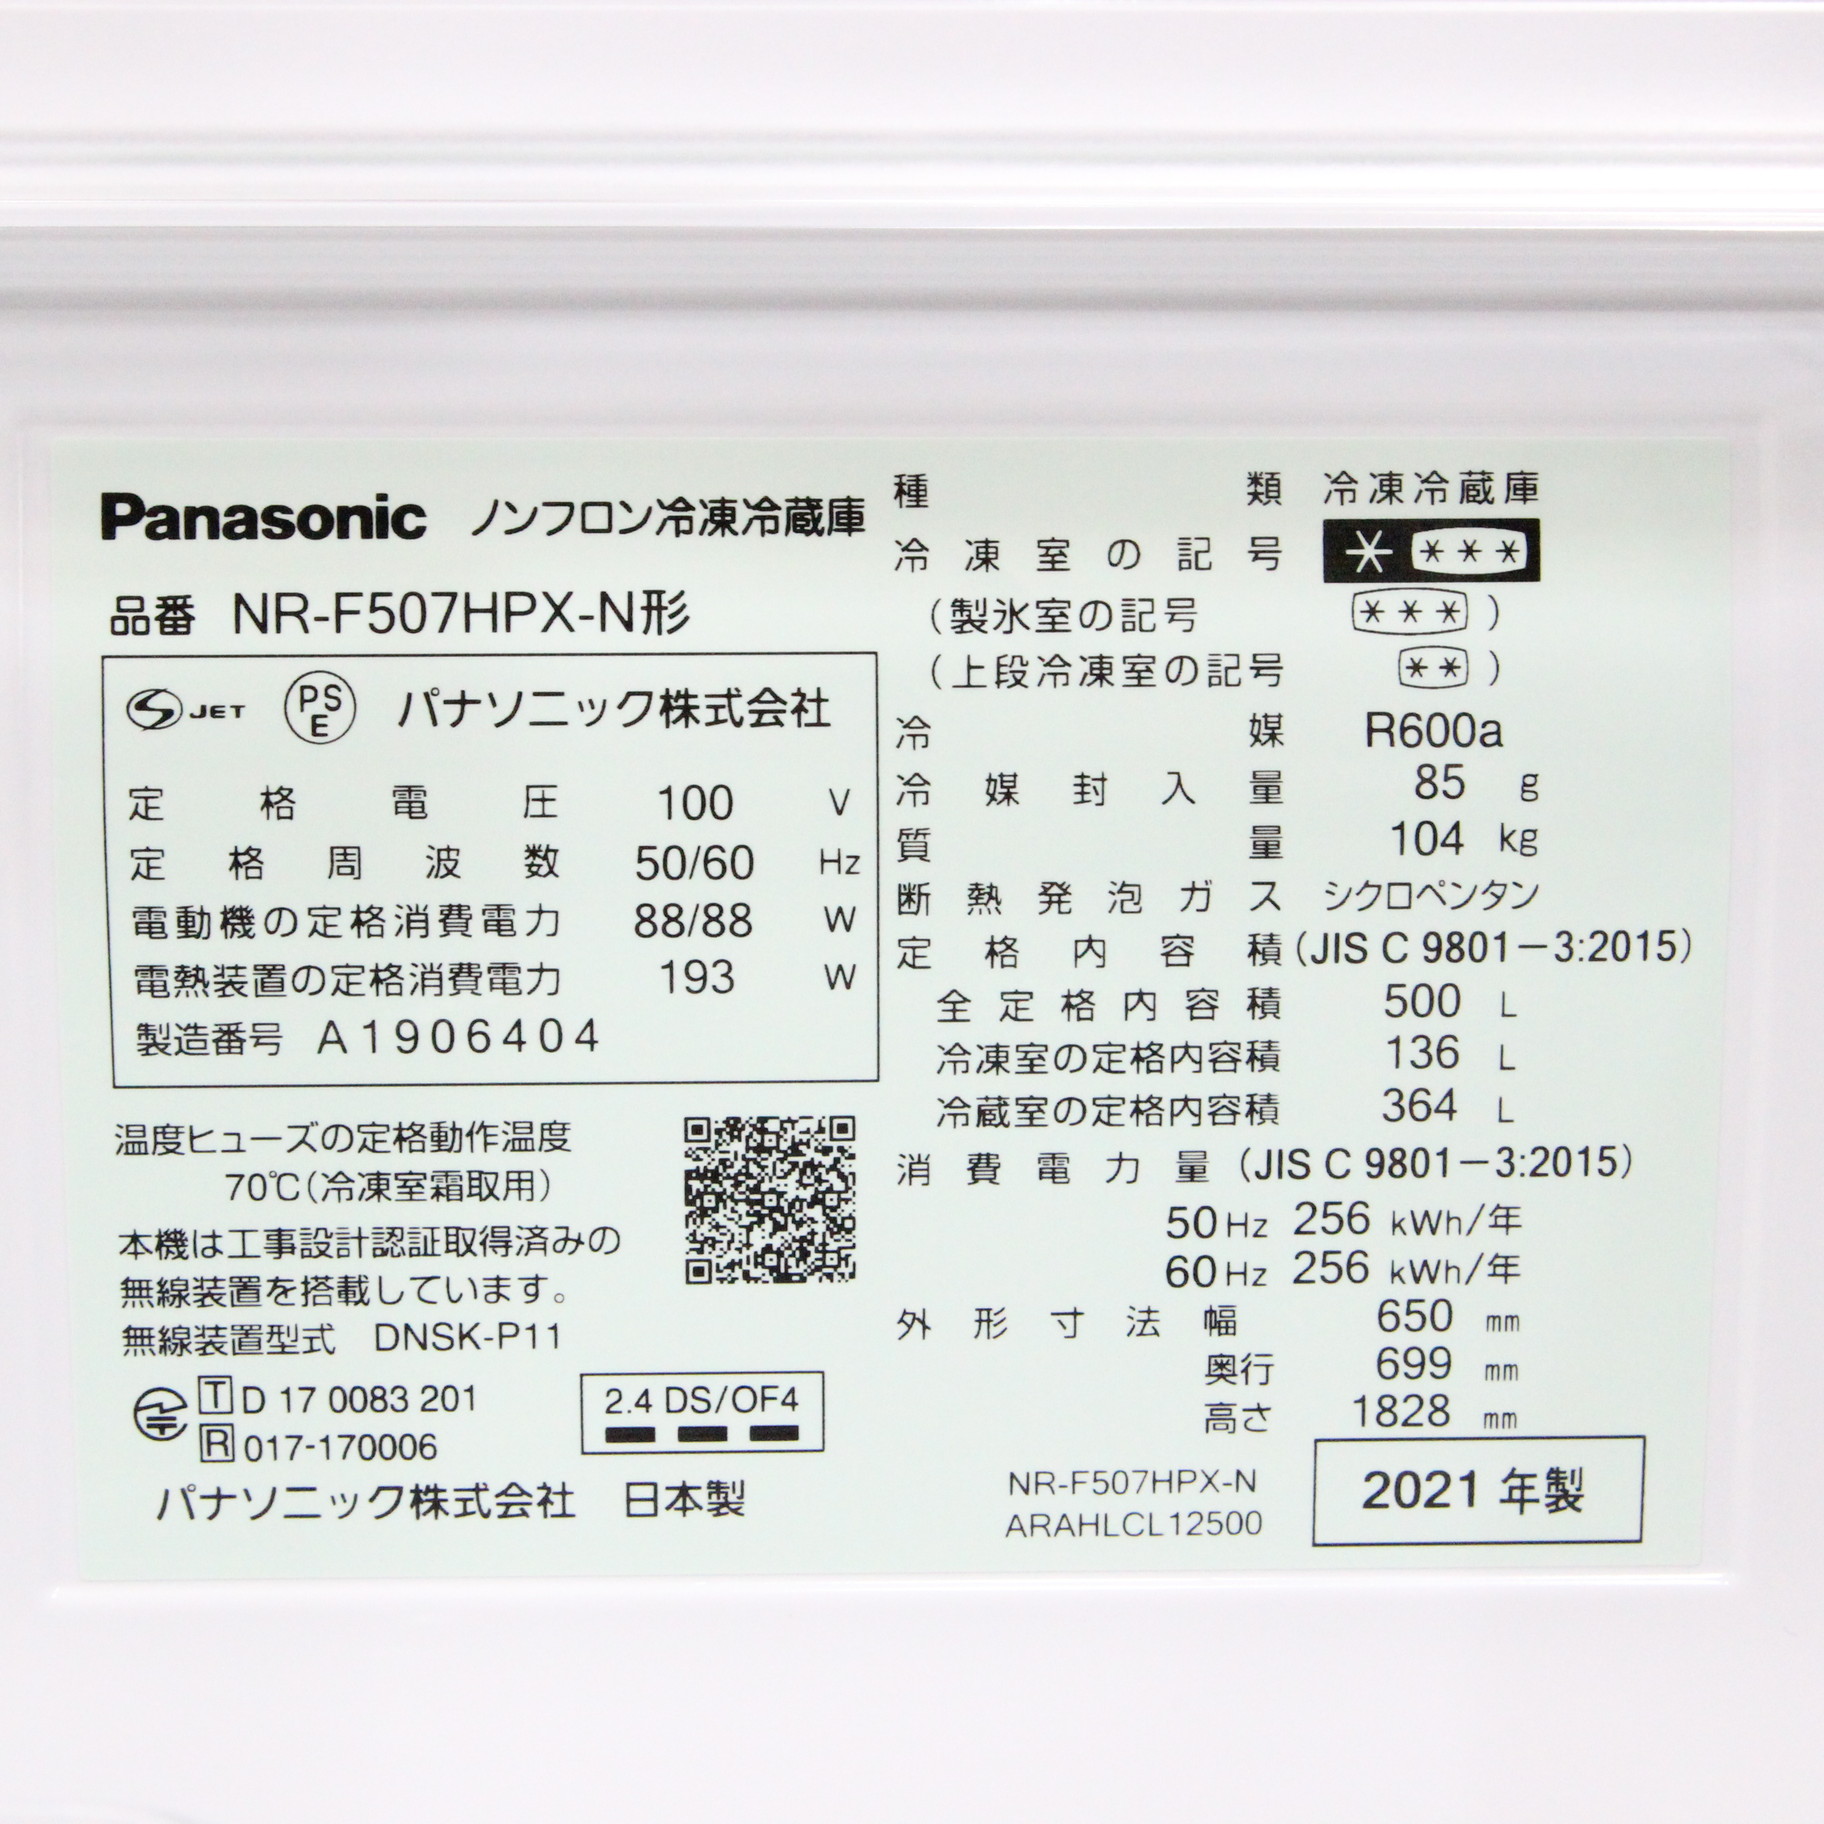 長期保証】NR-F503V パナソニック Panasonic 500L 冷蔵庫 - 生活家電